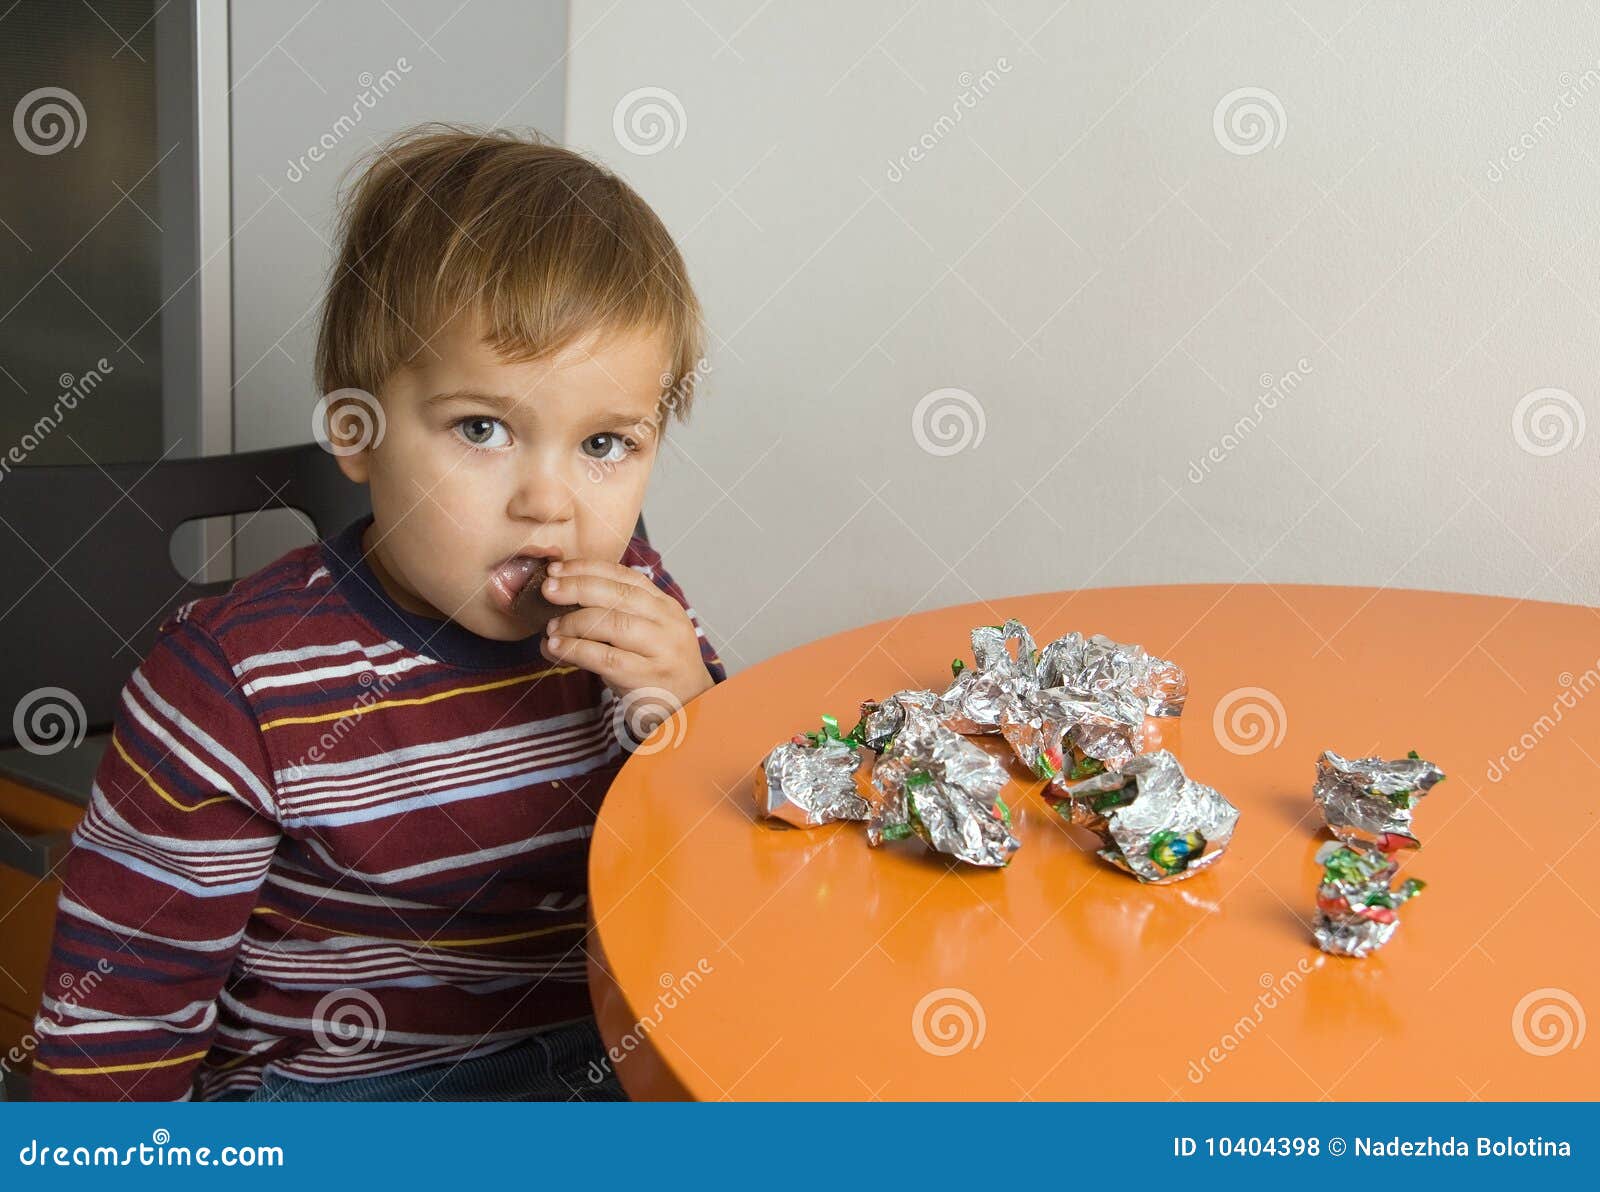 У вити есть конфеты 6. Мальчик с конфетами. Конфеты детям. Мальчик ест конфеты. Дети едят конфеты.